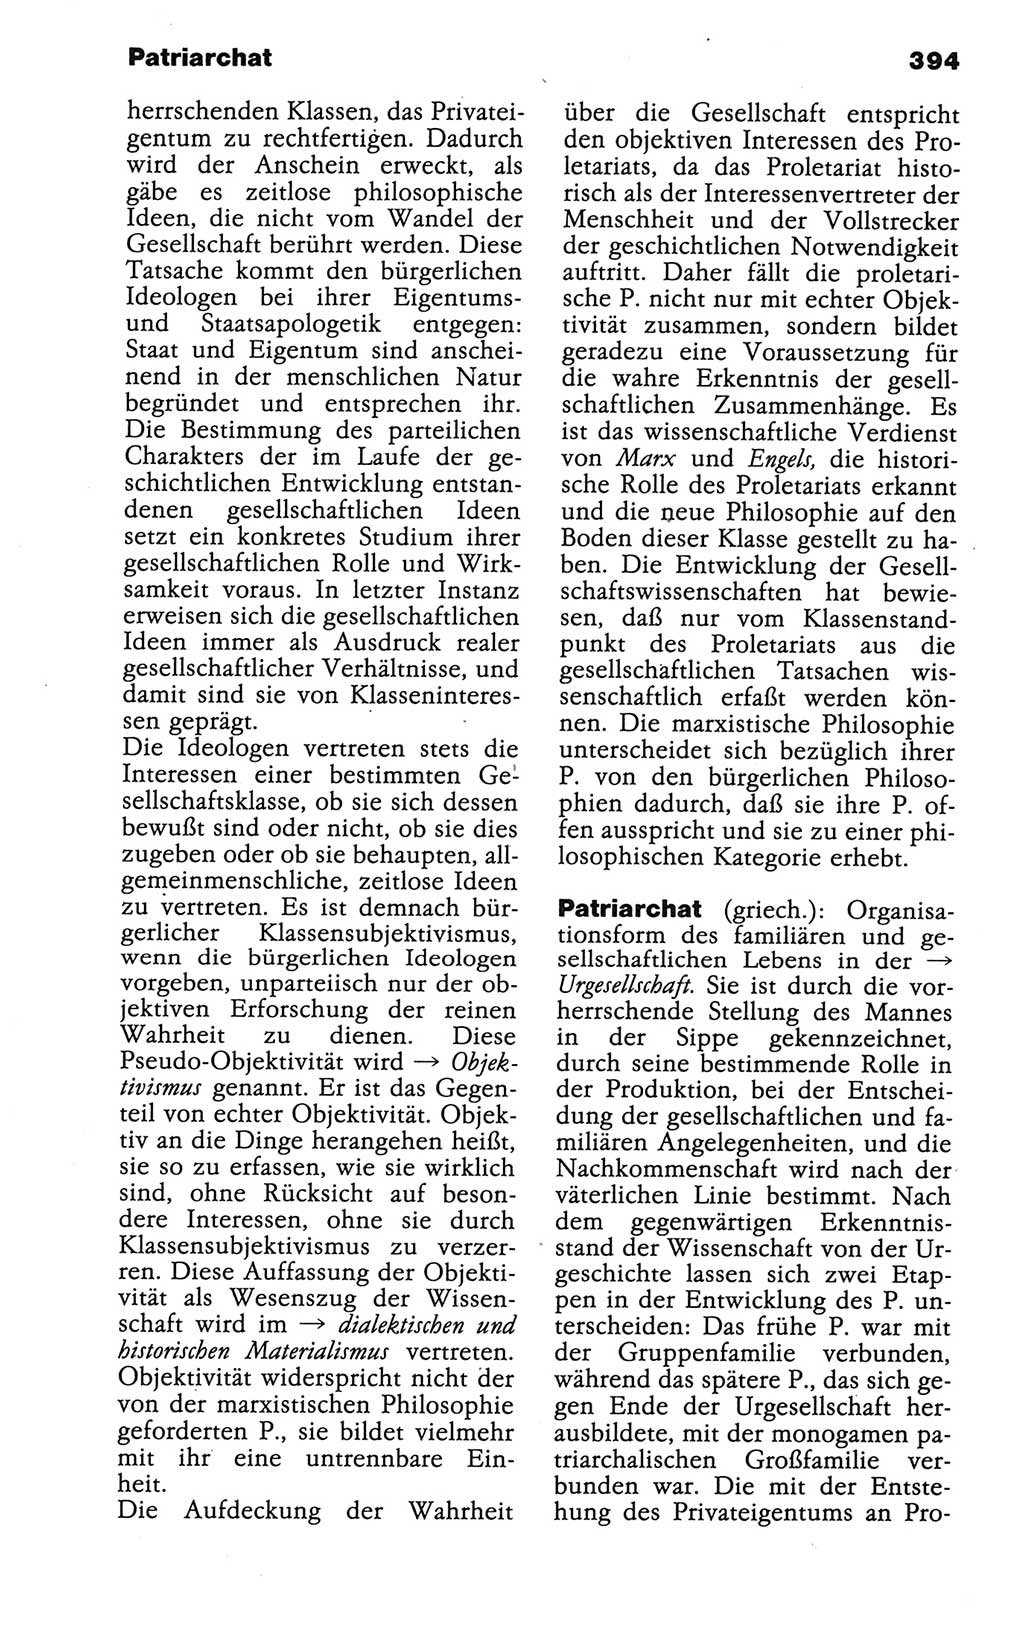 Wörterbuch der marxistisch-leninistischen Philosophie [Deutsche Demokratische Republik (DDR)] 1986, Seite 394 (Wb. ML Phil. DDR 1986, S. 394)